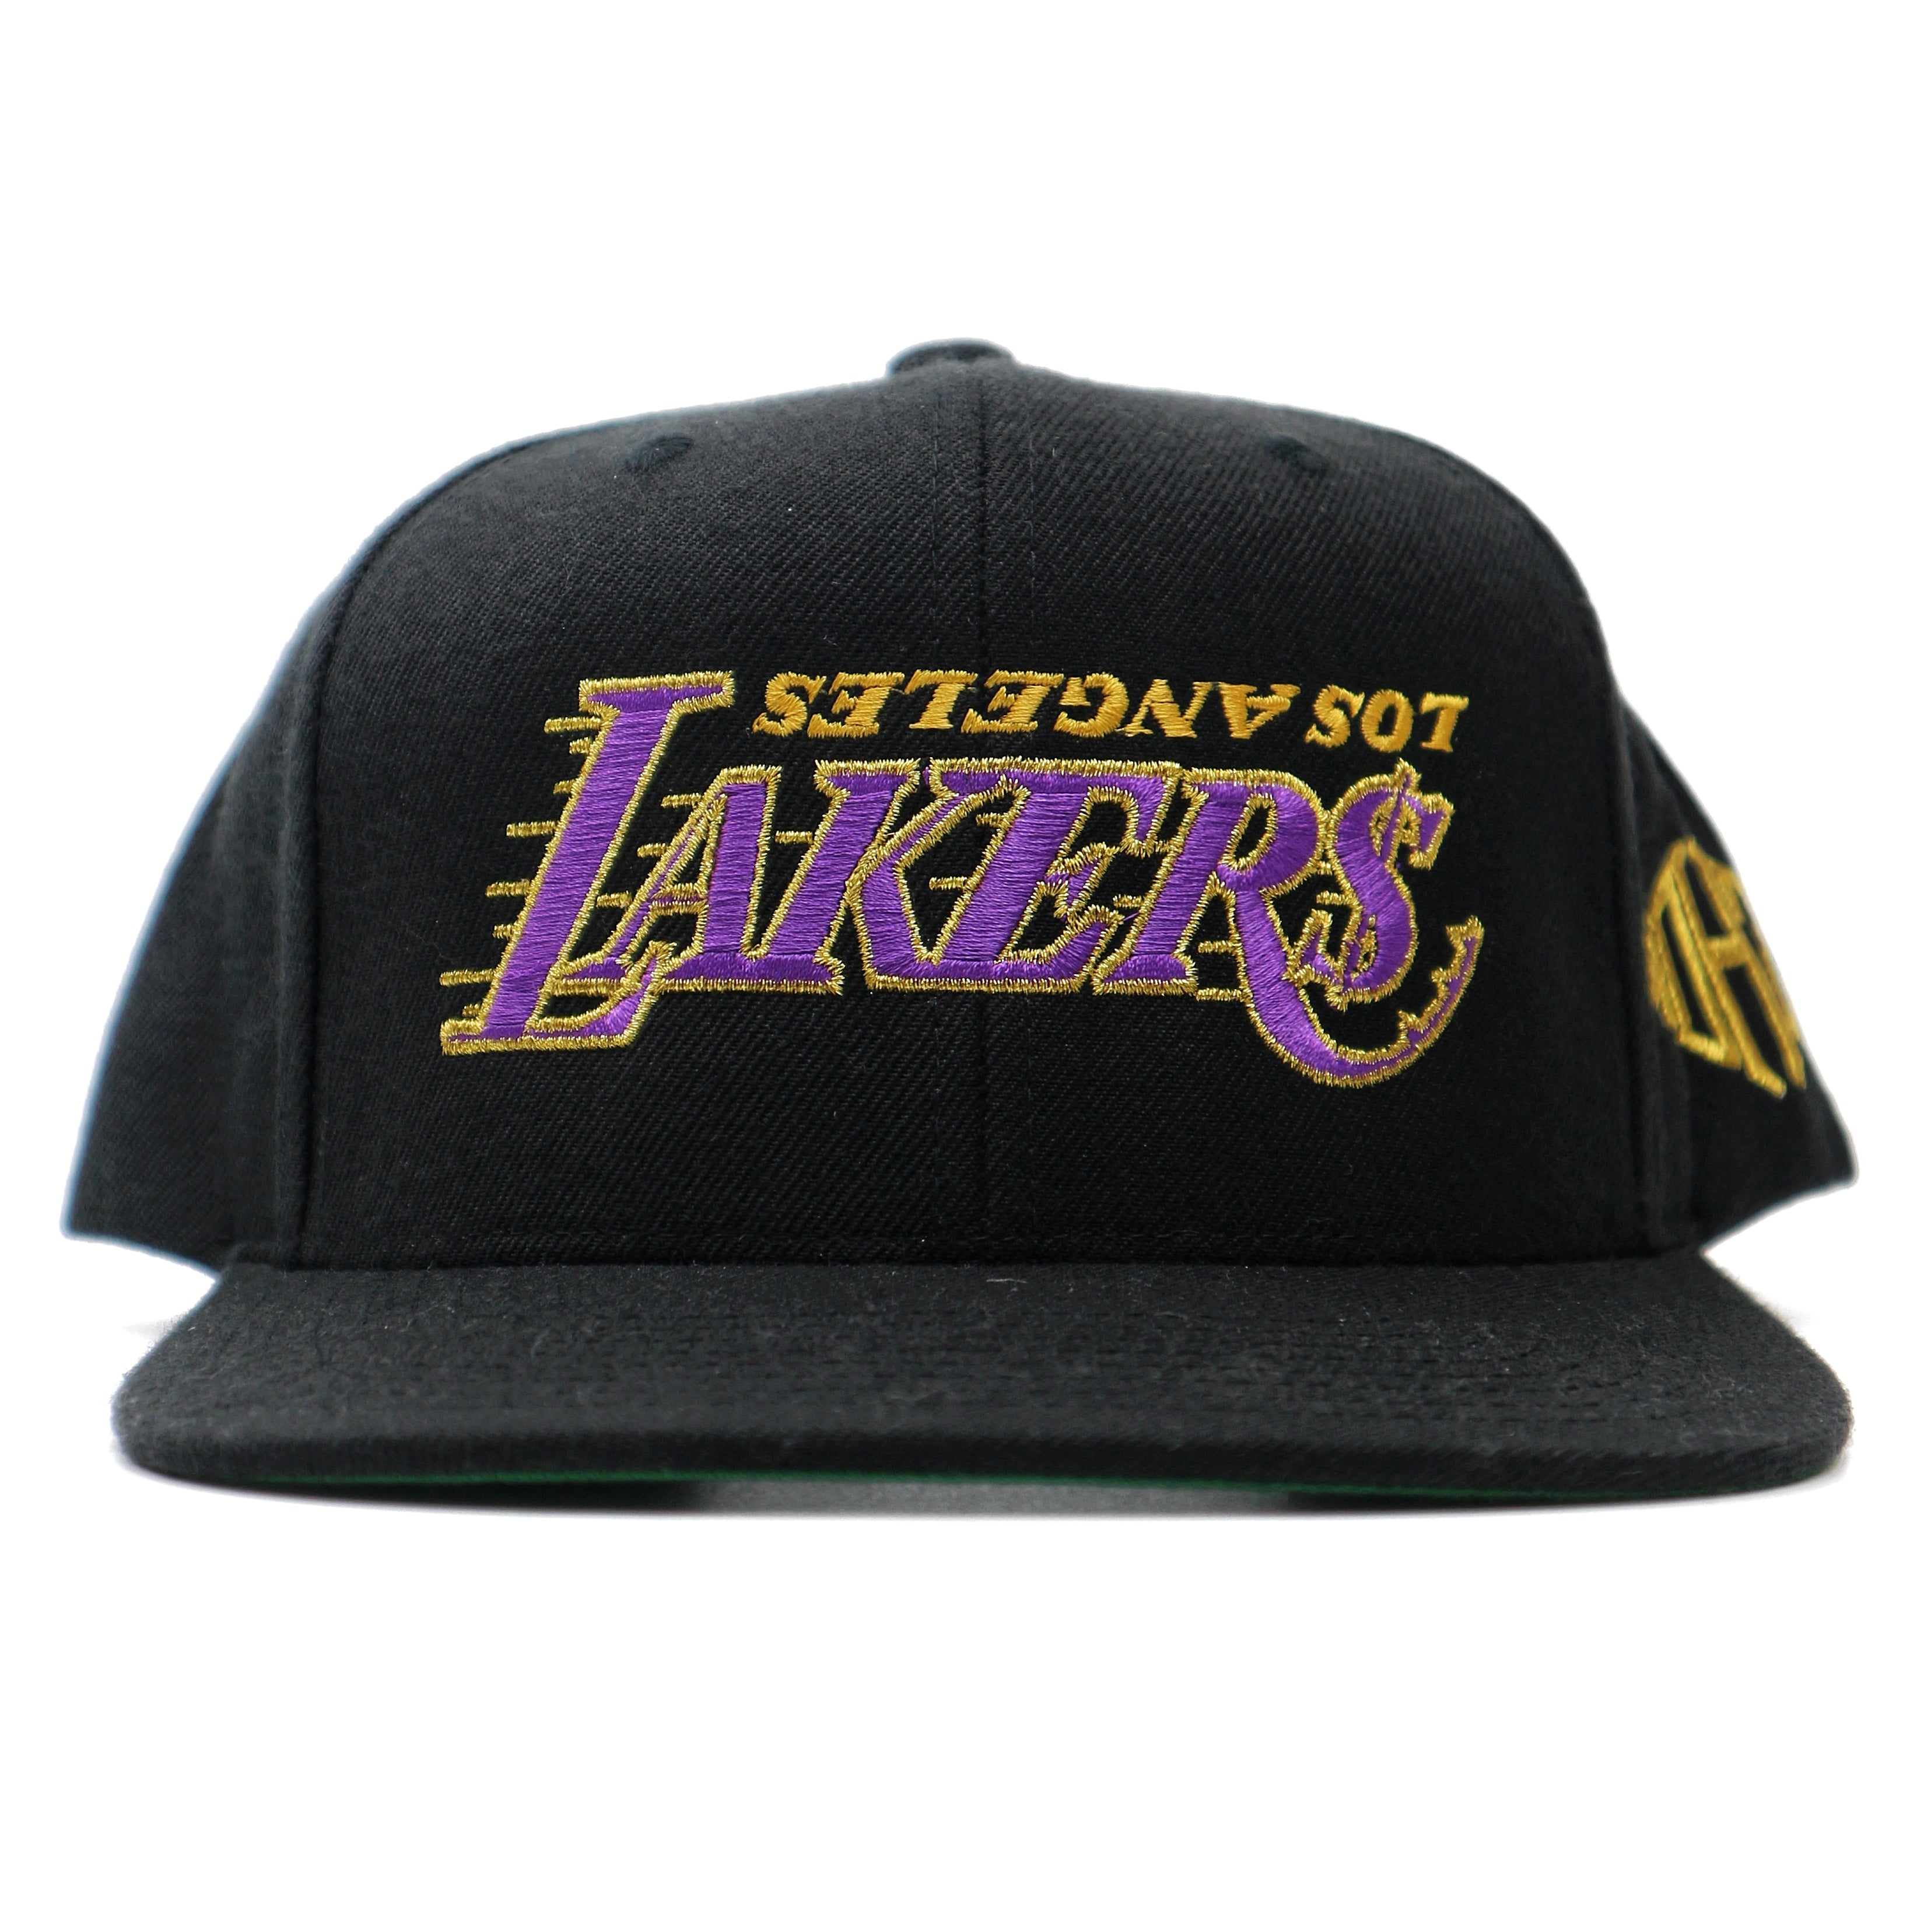 Kill the Hype Lakers Hat Black